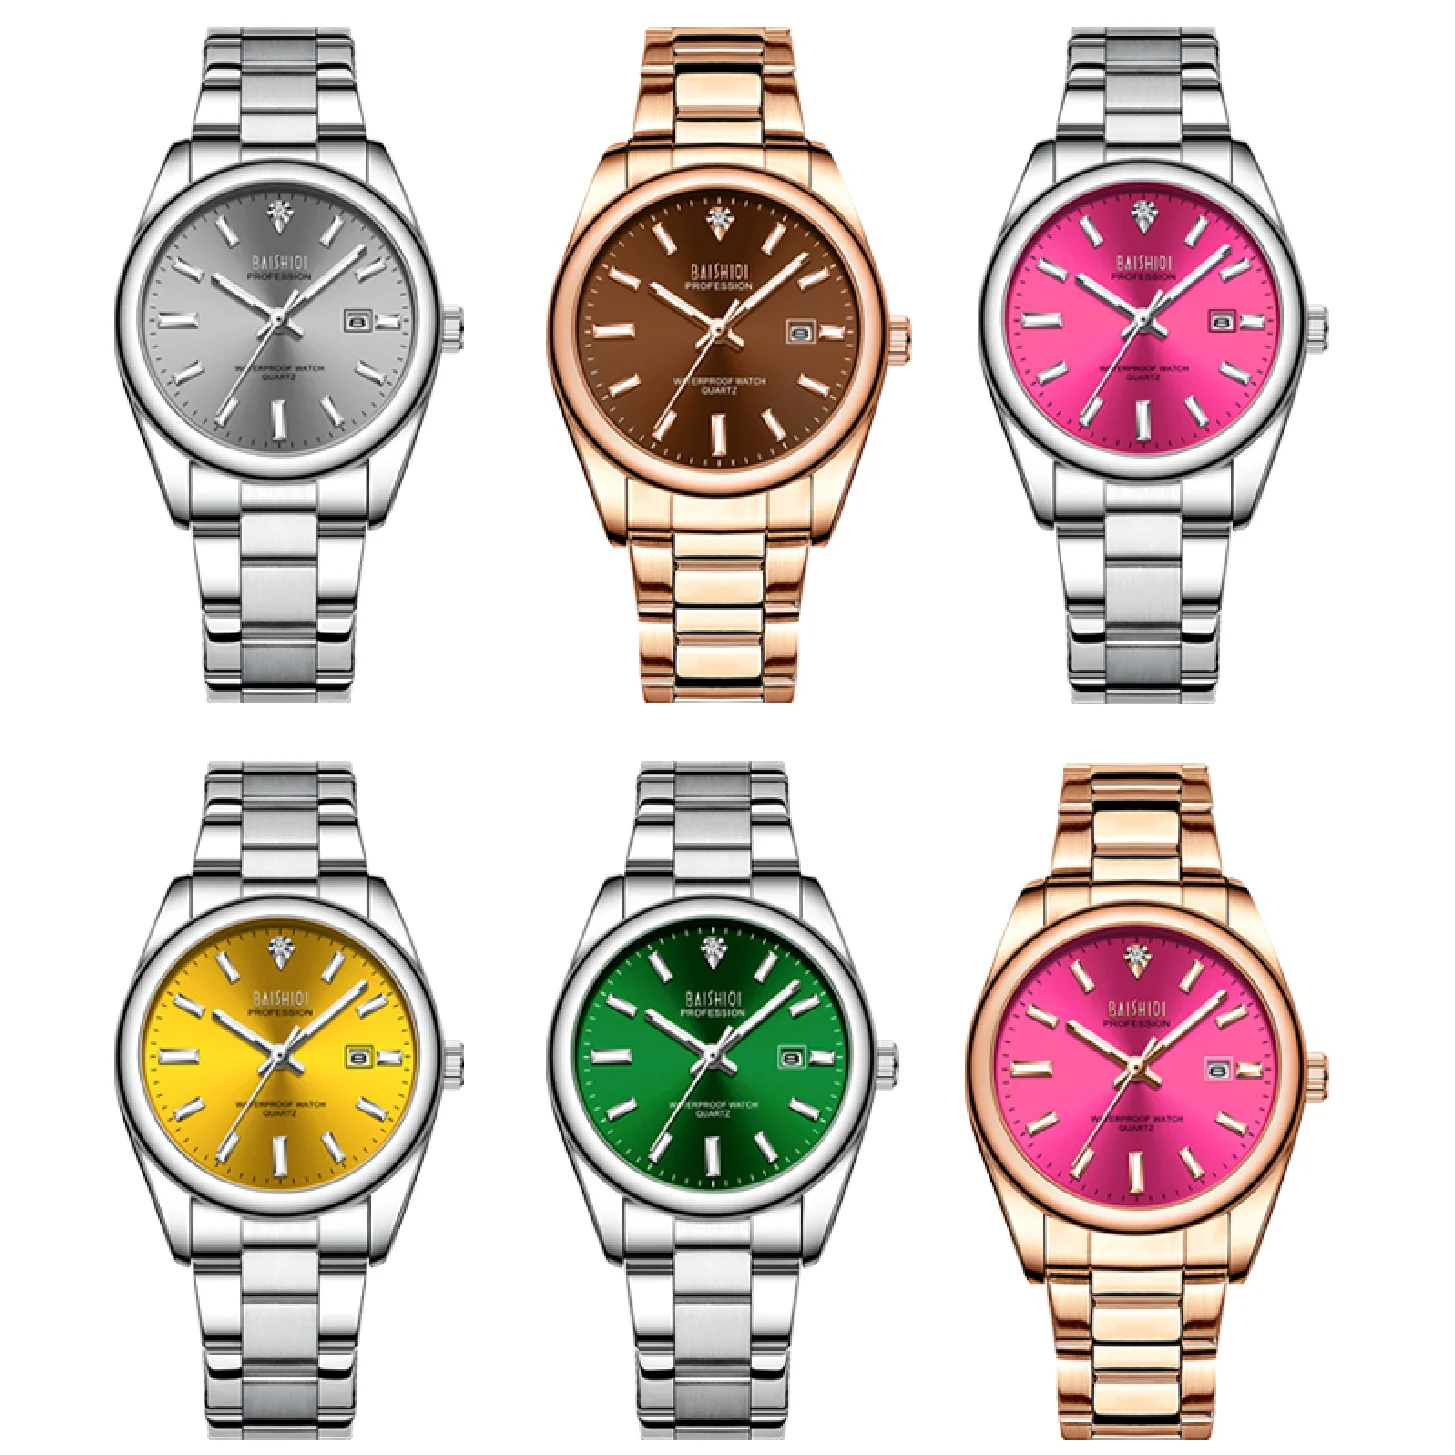 BIDEN Luxury Brand Women Quartz Watch Stainless Steel Fashion Ladies Dress Bracelet Wrist Watches Female Gifts relogio feminino enlarge